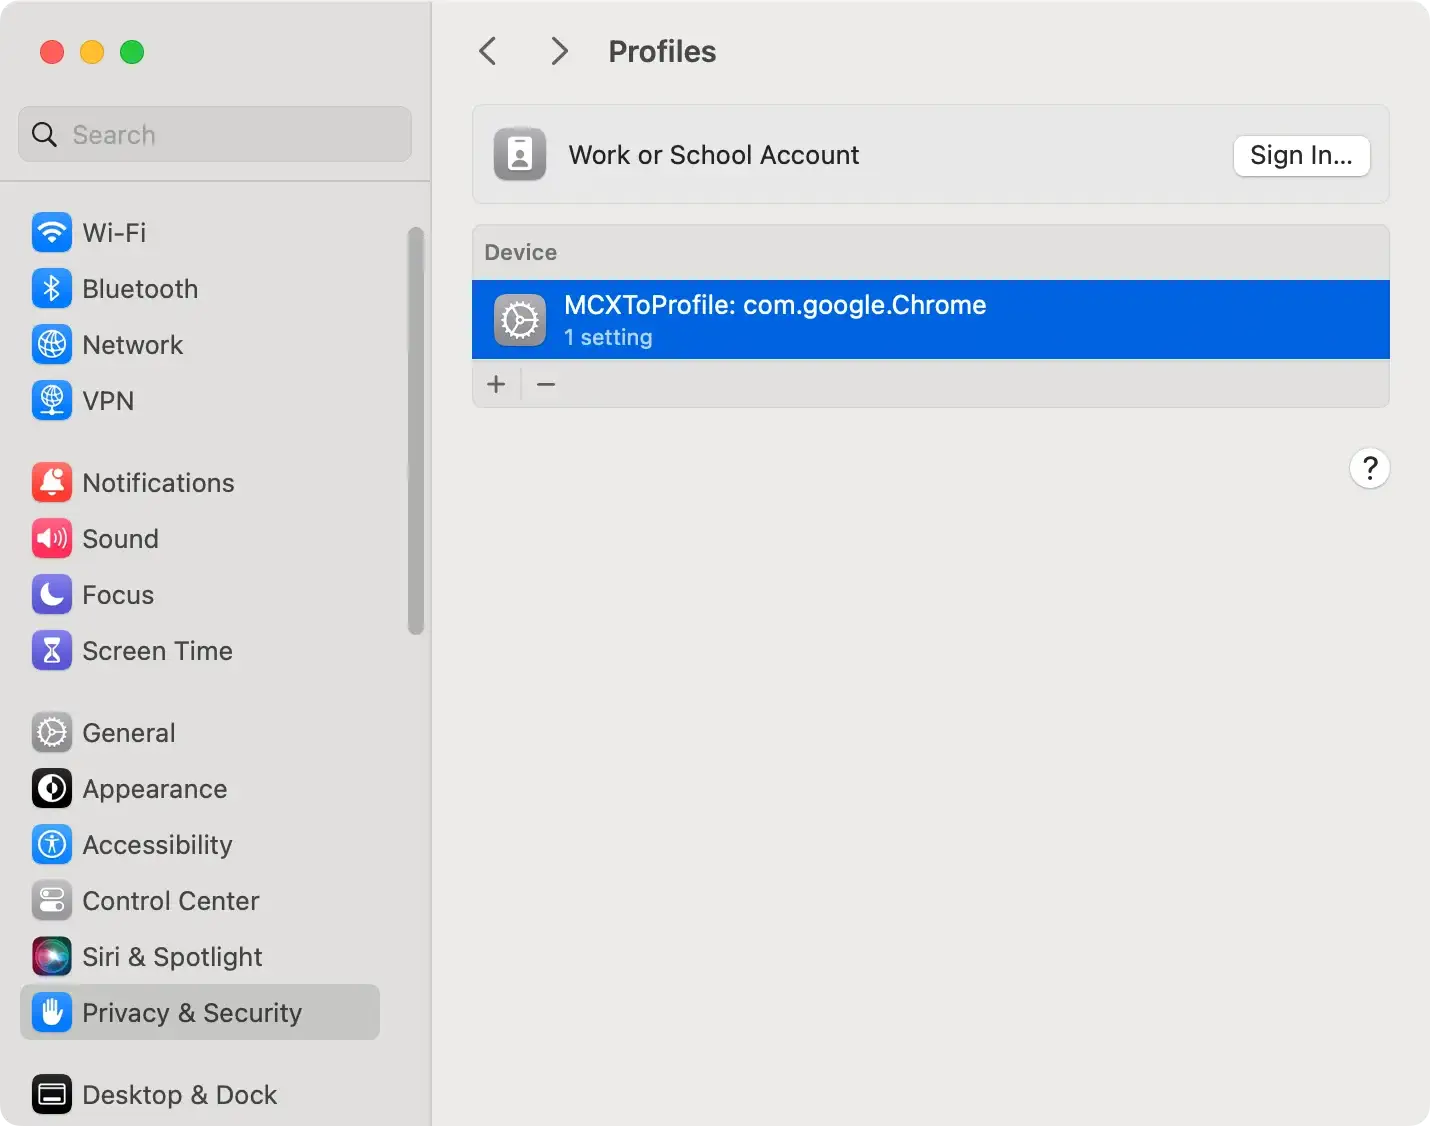 captura de tela das configurações gerais do perfil de configuração no macOS